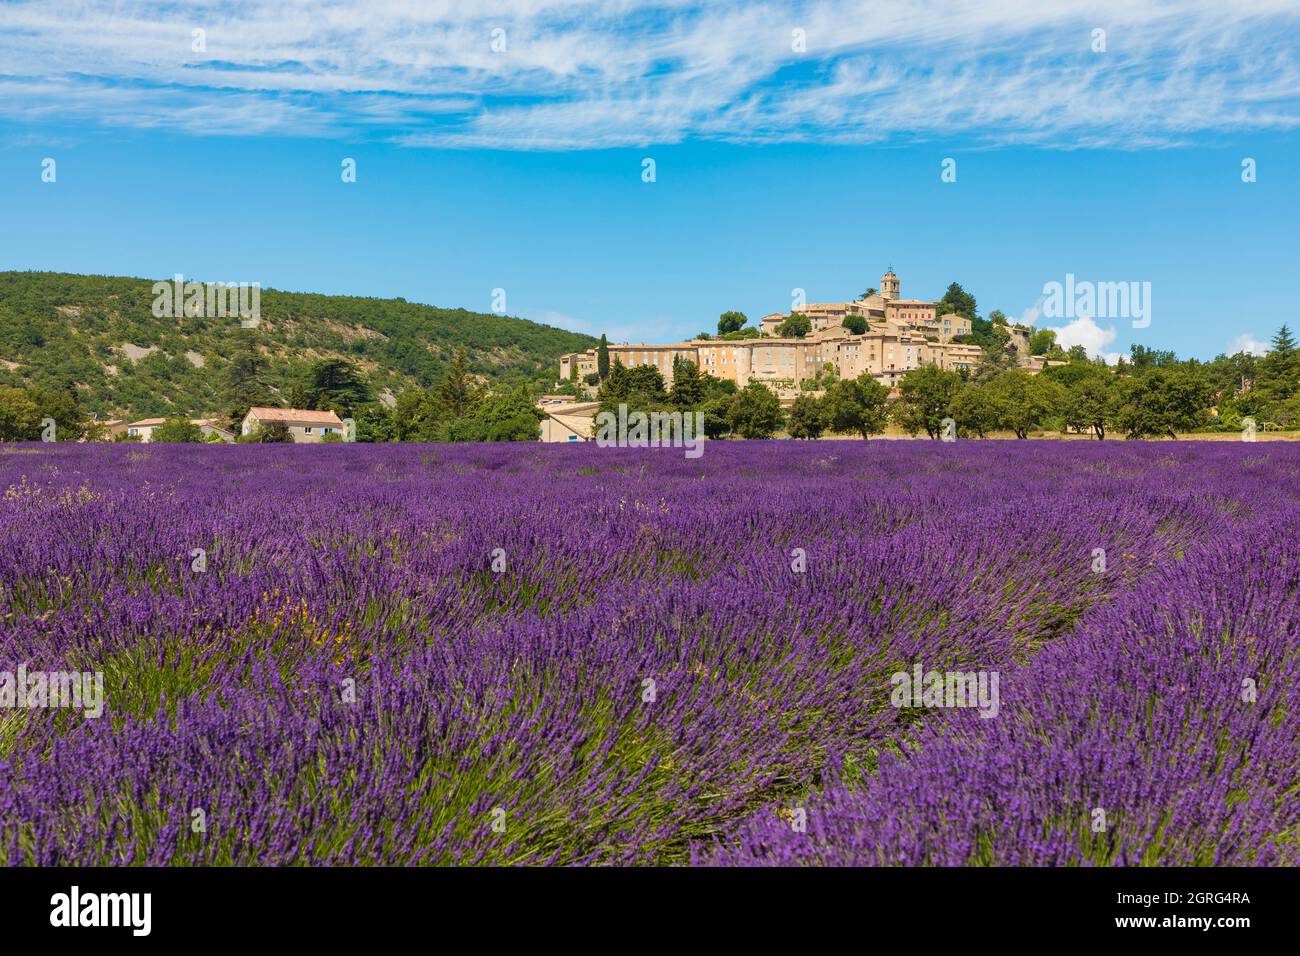 France, Alpes de Haute Provence, Banon, champ de lavande Banque D'Images